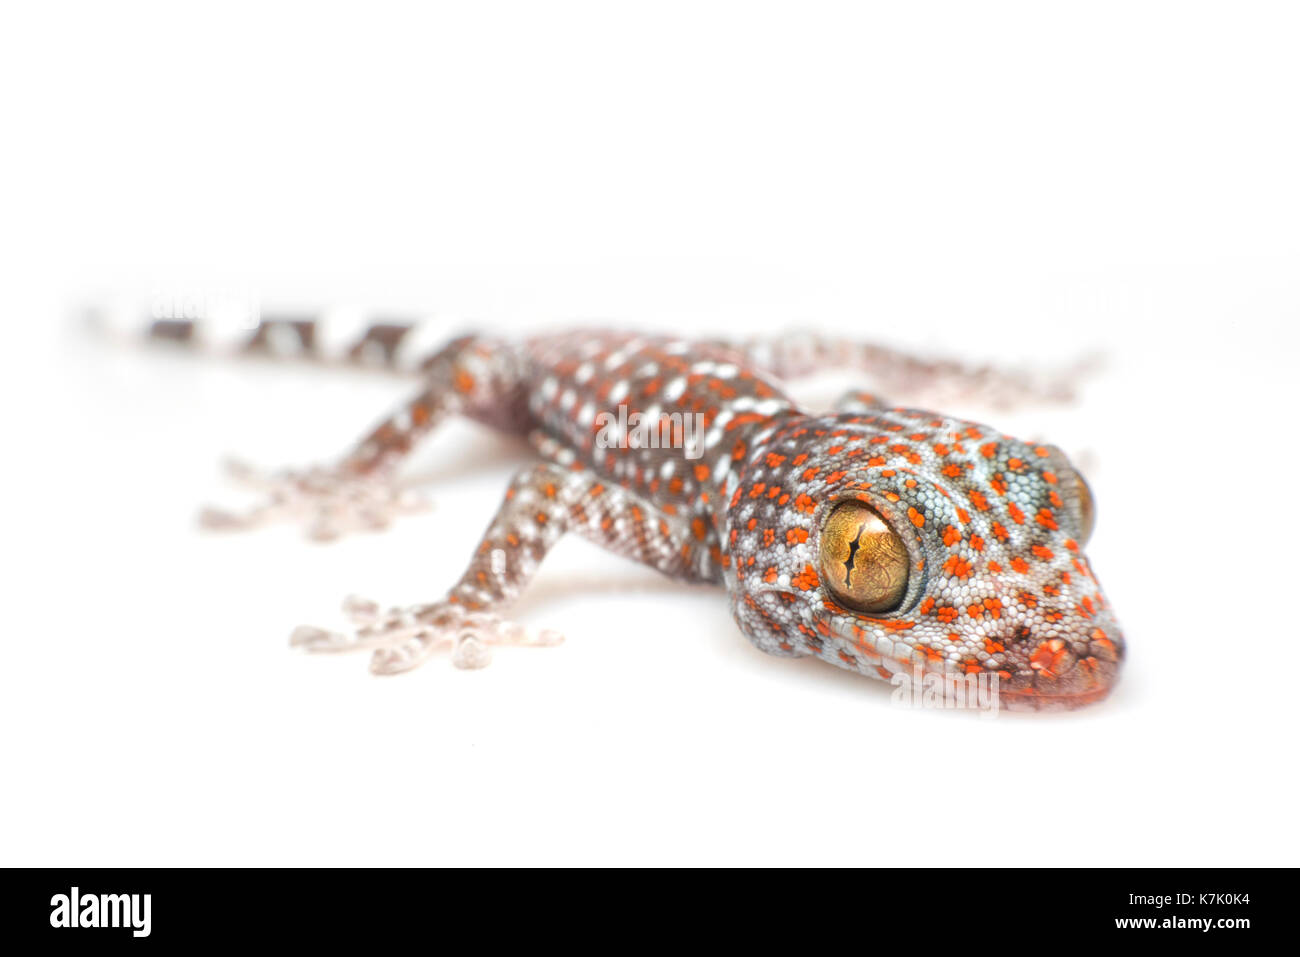 Tokay Gecko on white background Stock Photo